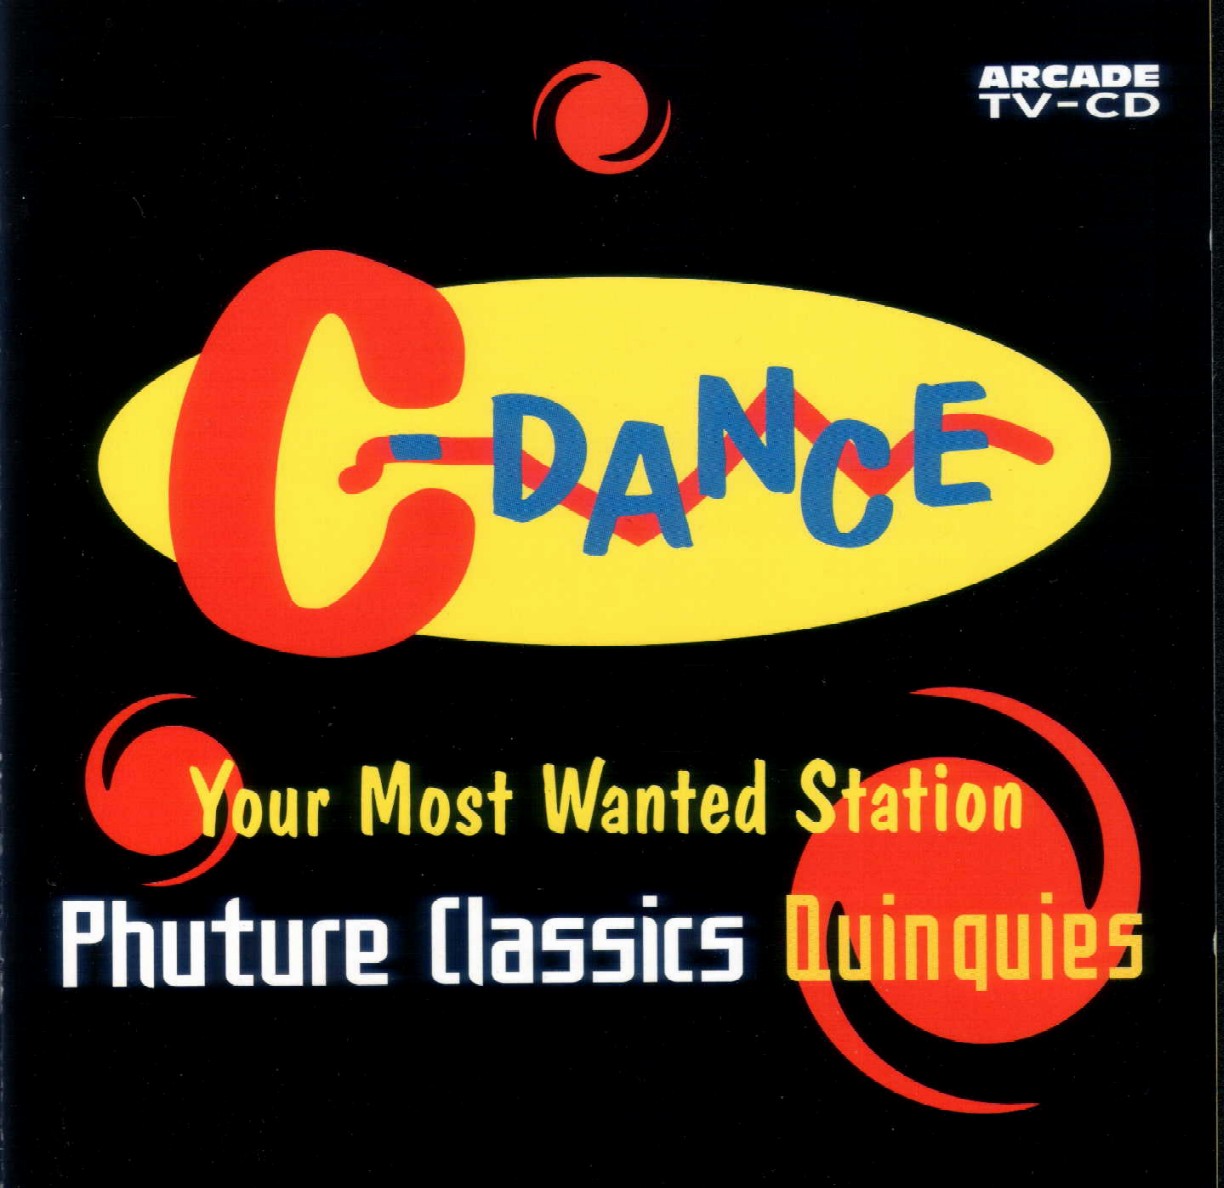 C-Dance-Phuture Classicz Quinquies-(CD)-(2001)-TPO